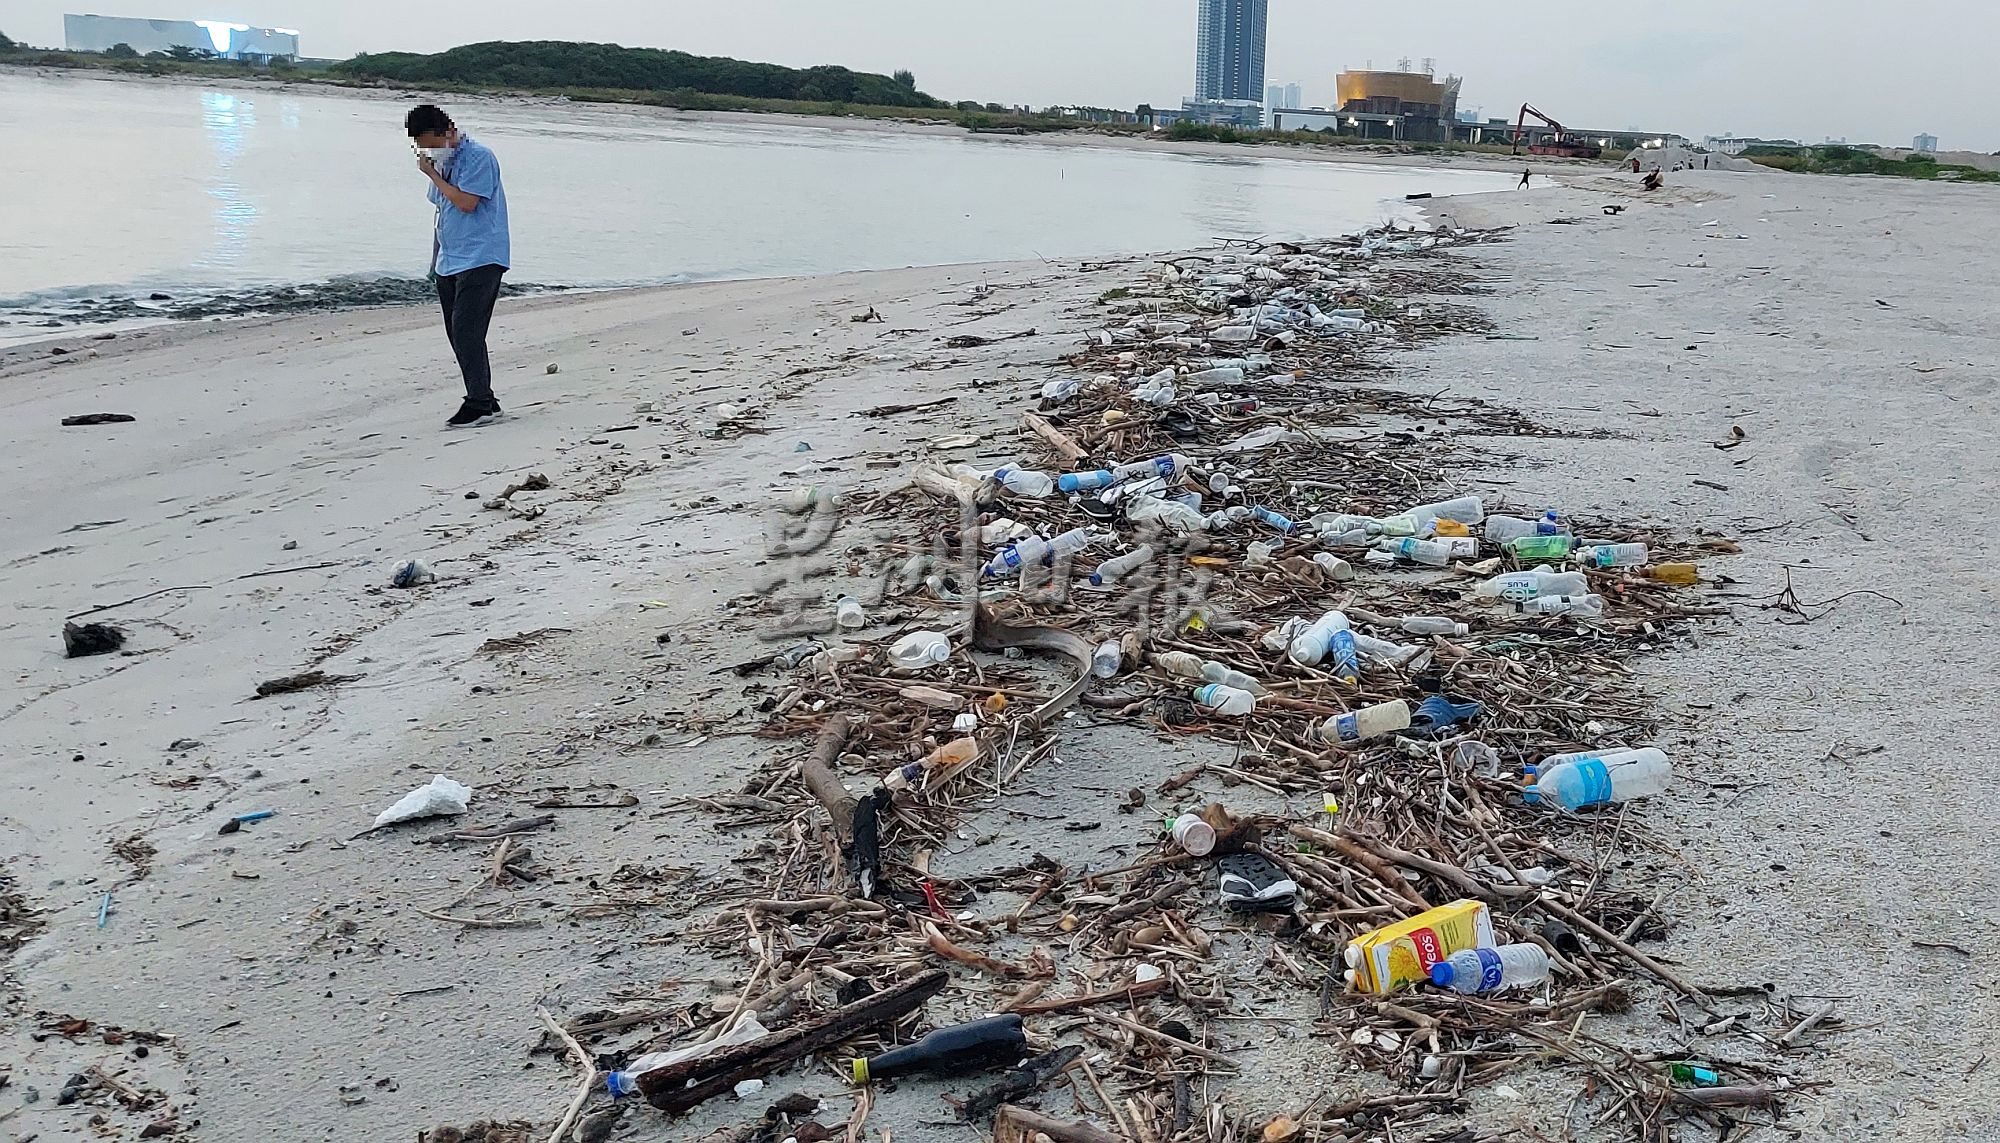 （古城封面主文）填海沙滩被访客蹂躏成处处垃圾